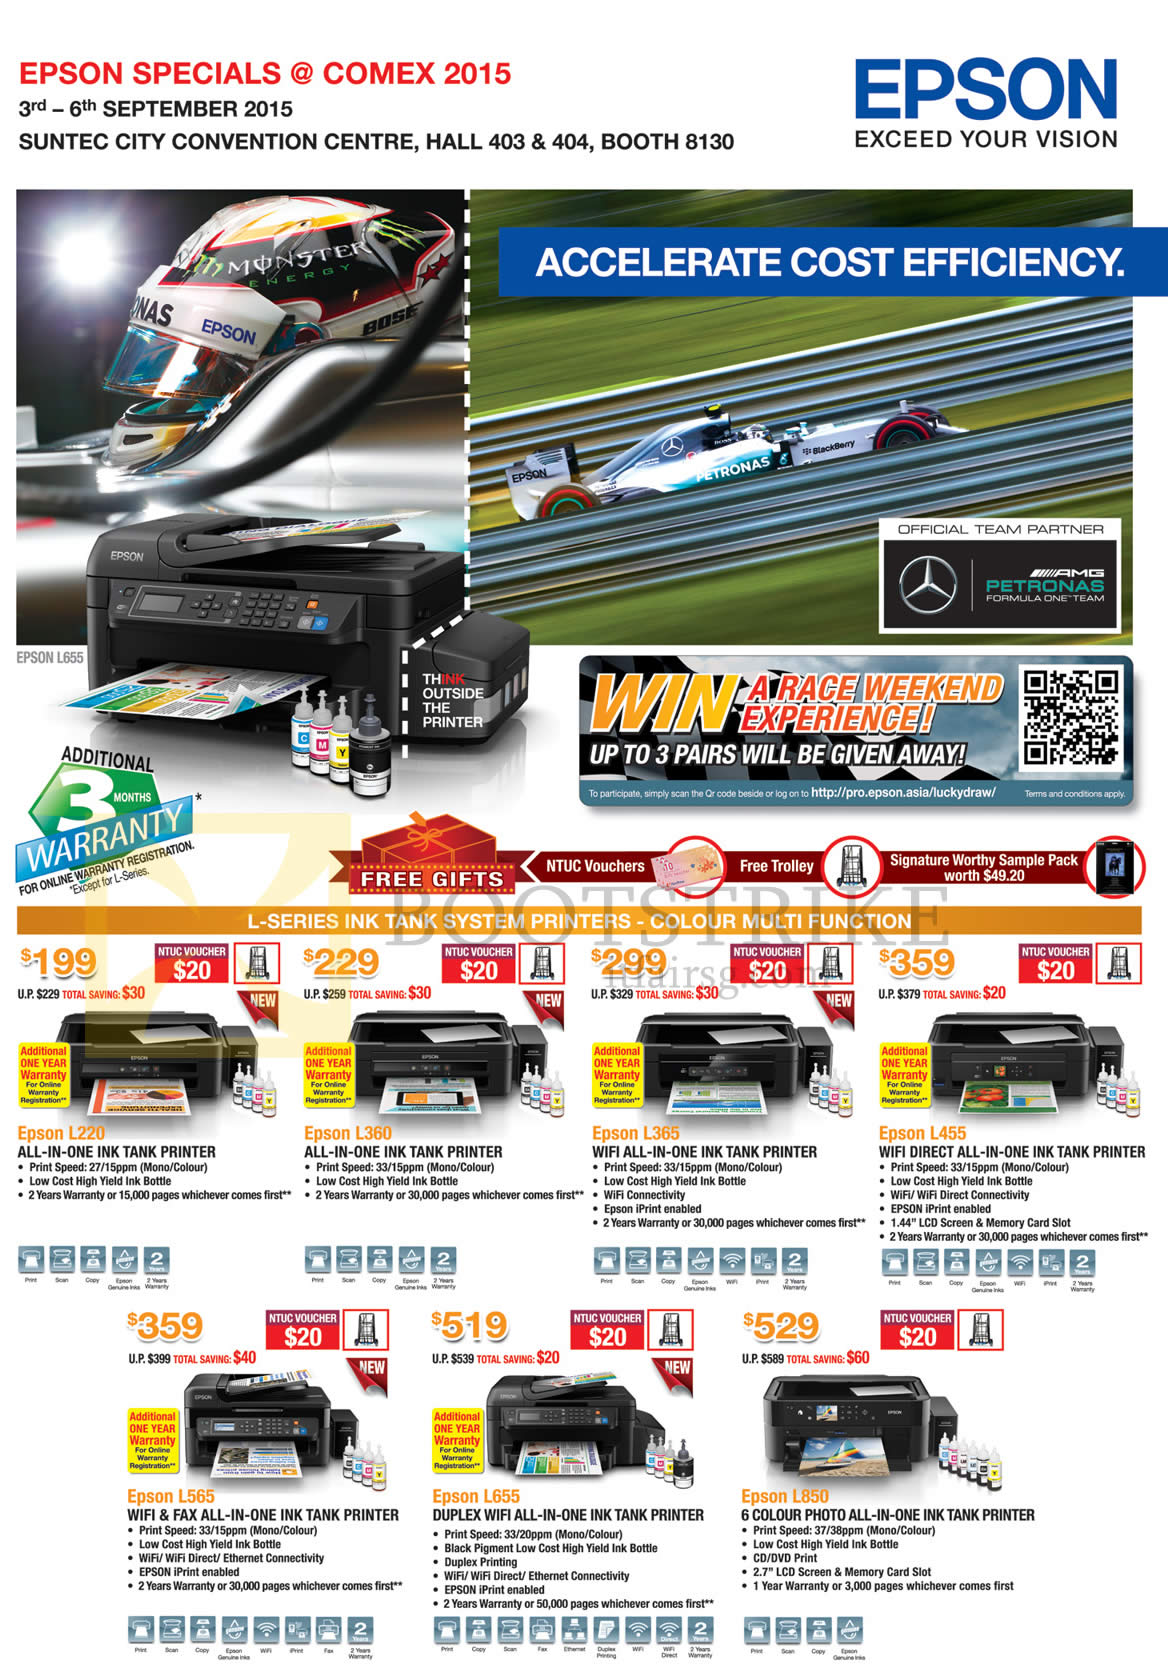 COMEX 2015 price list image brochure of Epson Inkjet Printers L220, L360, L365, L455, L565, L655, L850